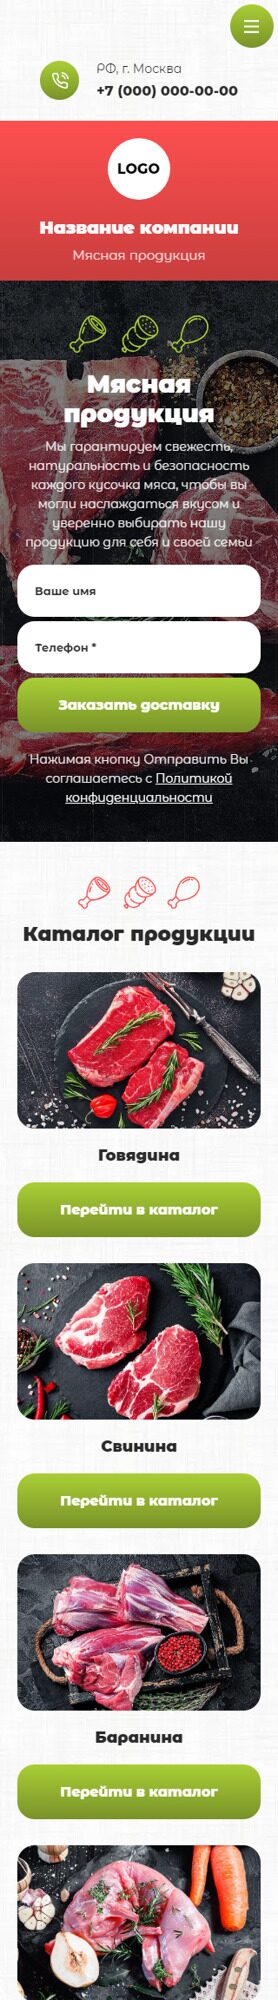 Готовый Сайт-Бизнес № 5128476 - Мясо и мясопродукты (Мобильная версия)